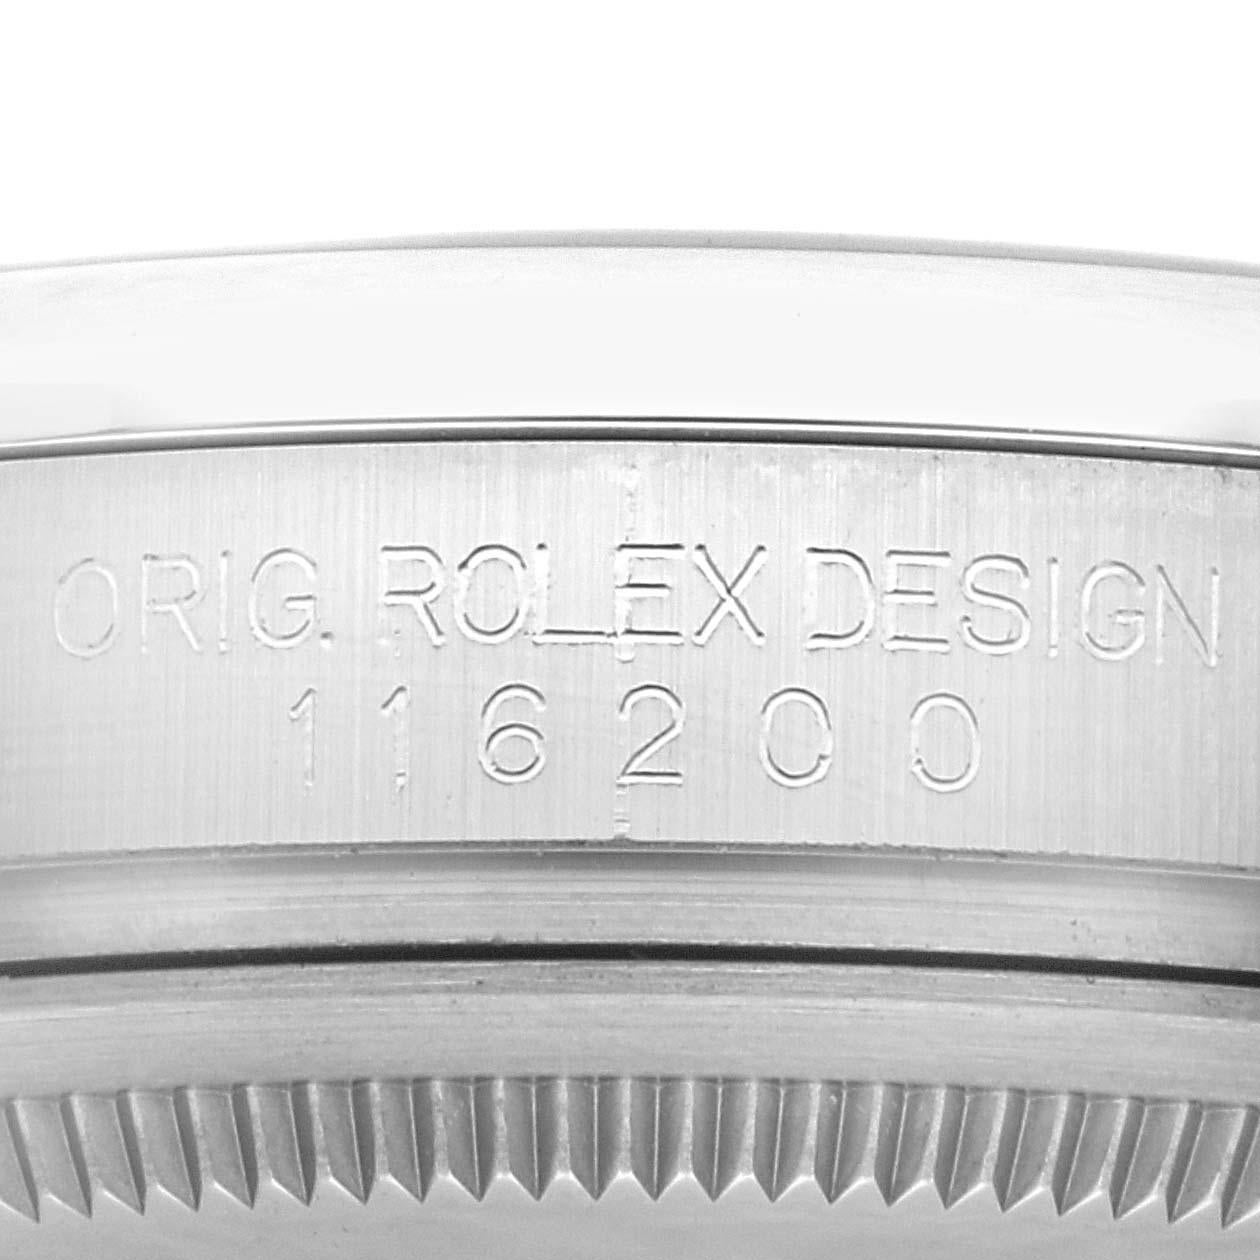 Rolex Datejust Blue Roman Dial Oyster Bracelet Steel Mens Watch 116200 Box Card. Mouvement à remontage automatique certifié officiellement chronomètre. Boîtier en acier inoxydable de 36.0 mm de diamètre. Logo Rolex sur une couronne. Lunette bombée